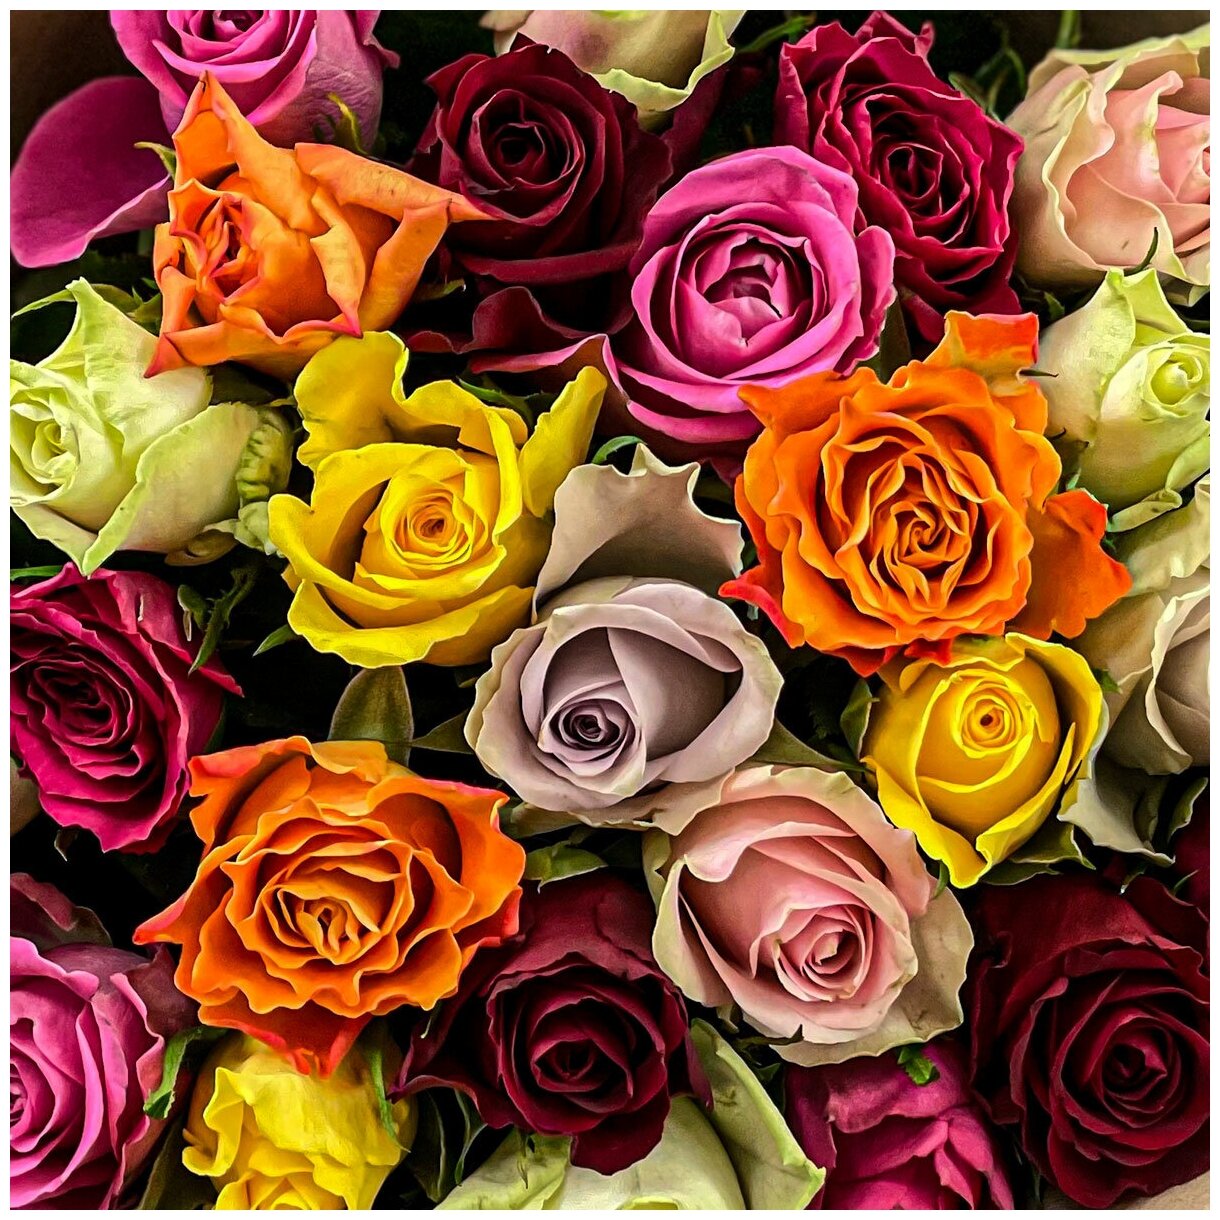 Букет живых цветов из 11 разноцветных роз 40см в крафте